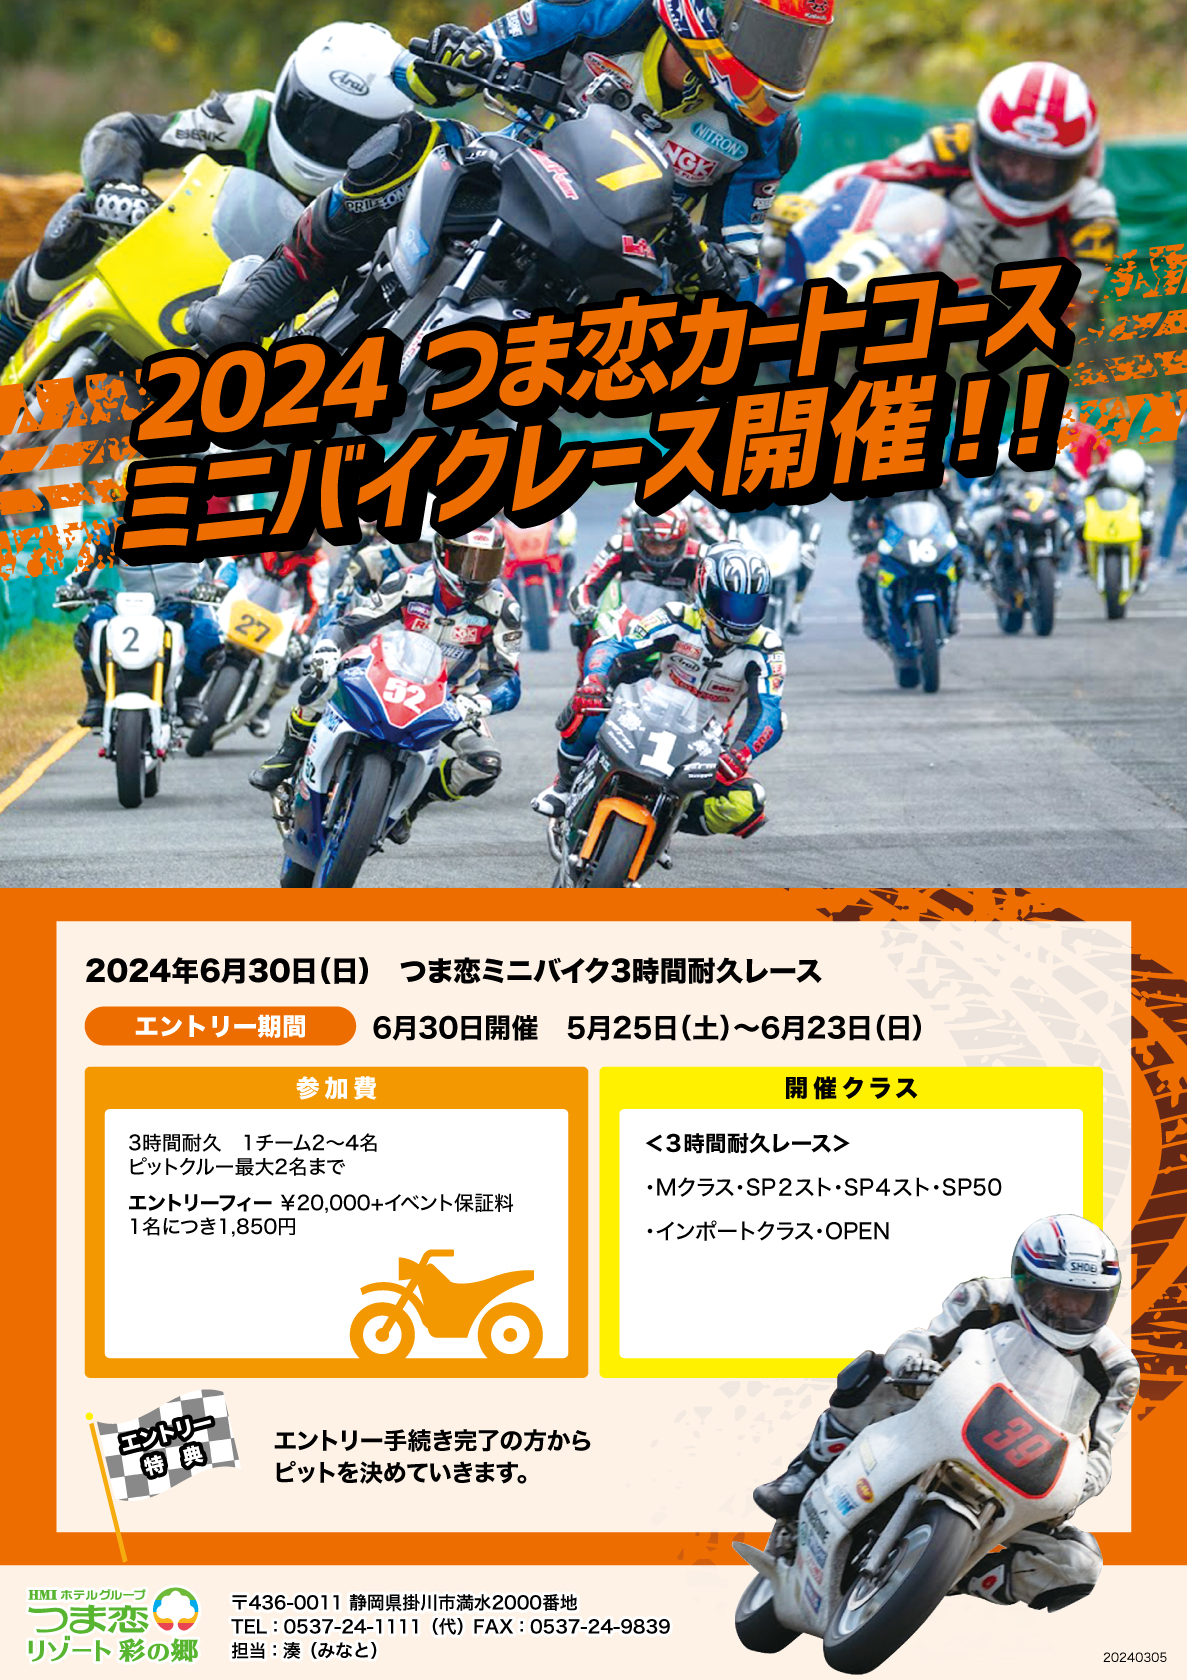 つま恋カートコースミニバイクレース開催